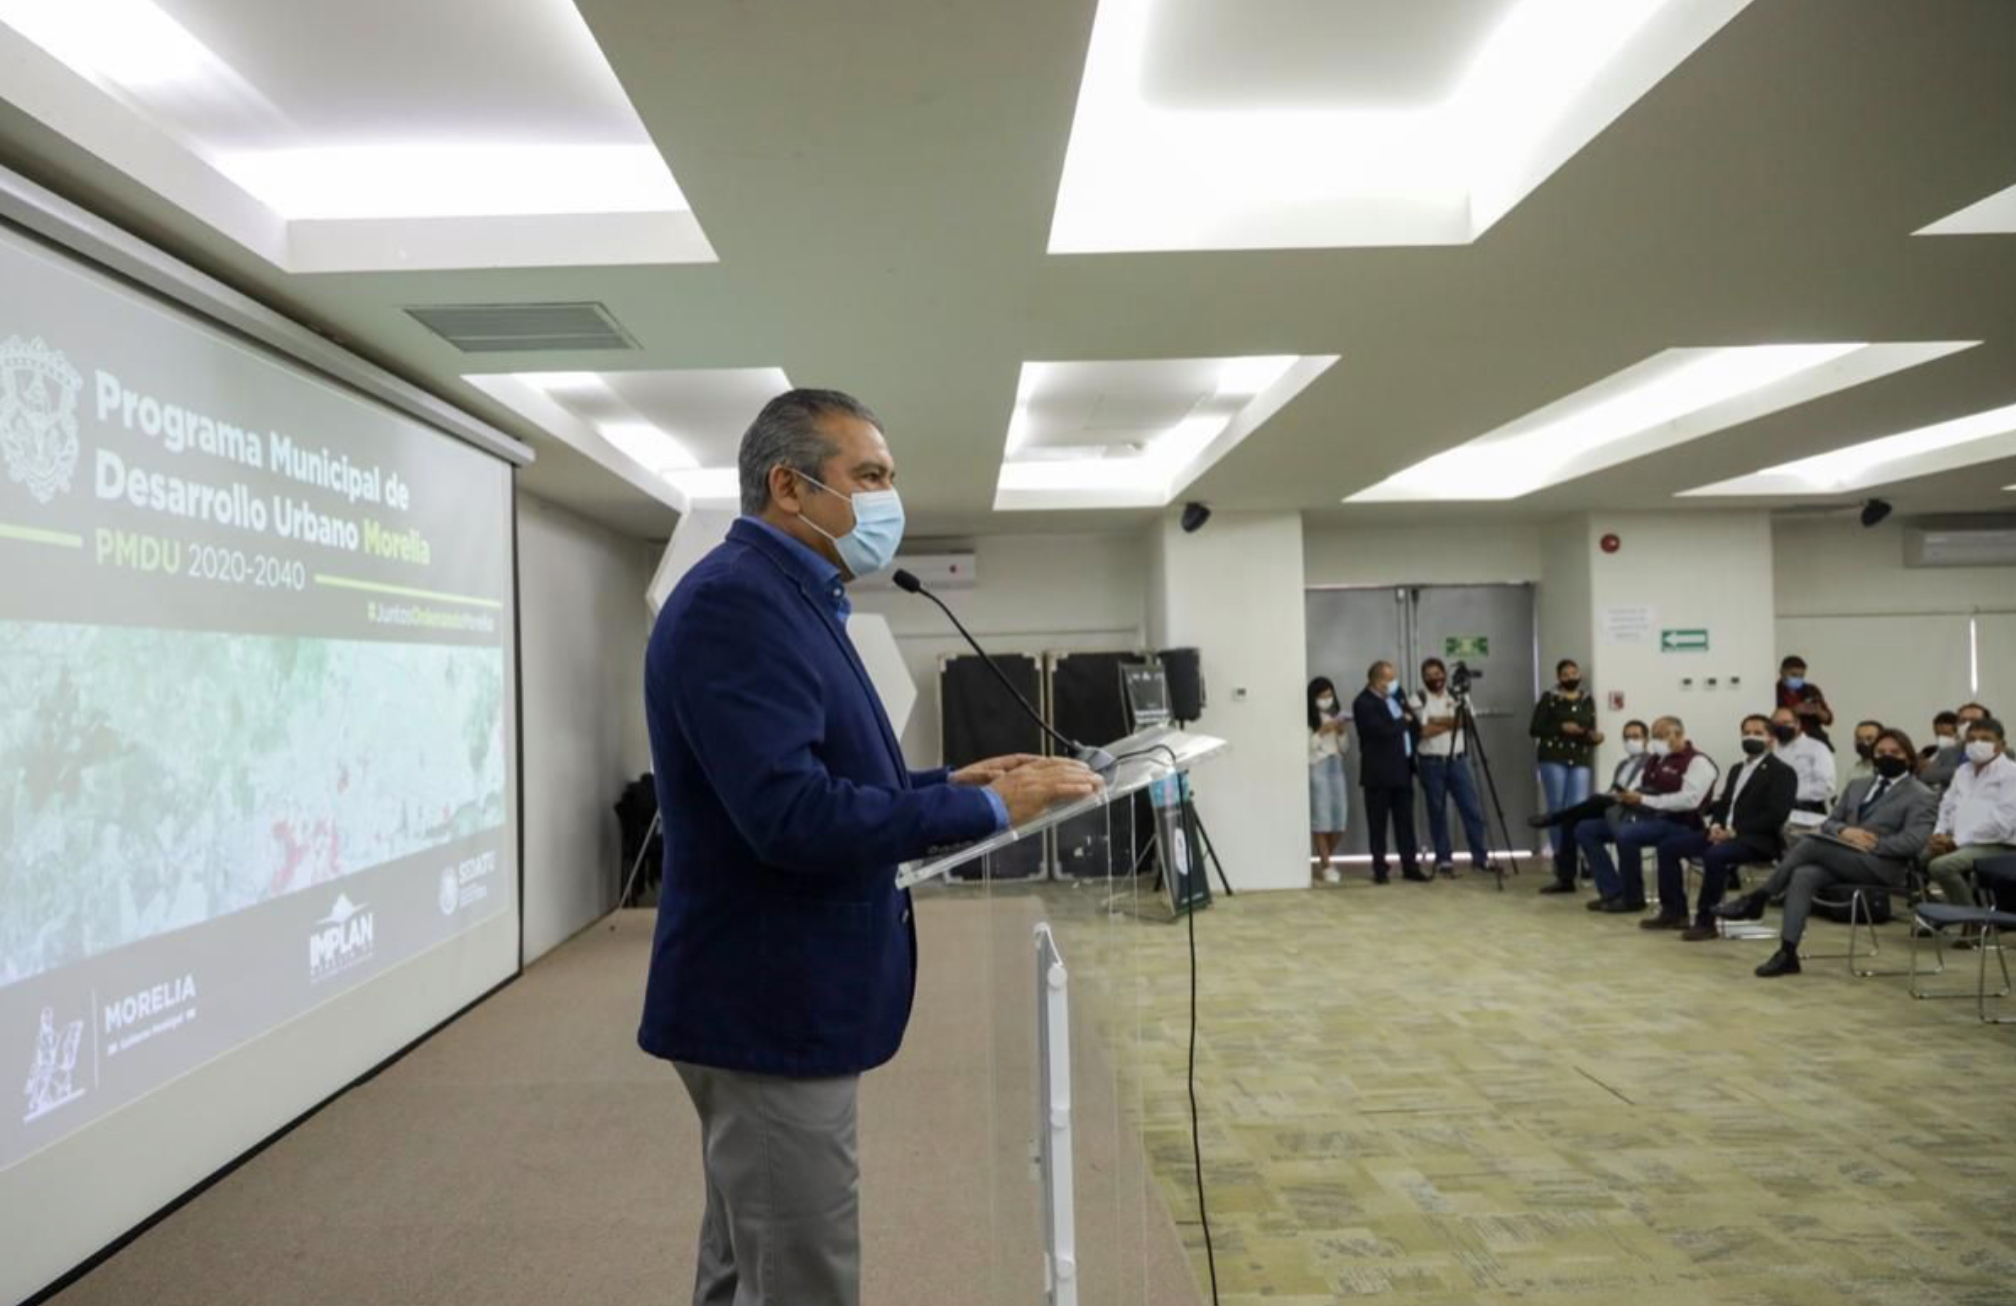 Abre Raúl Morón proceso de consulta pública para conformar el Programa Municipal de Desarrollo Urbano 2020-2040